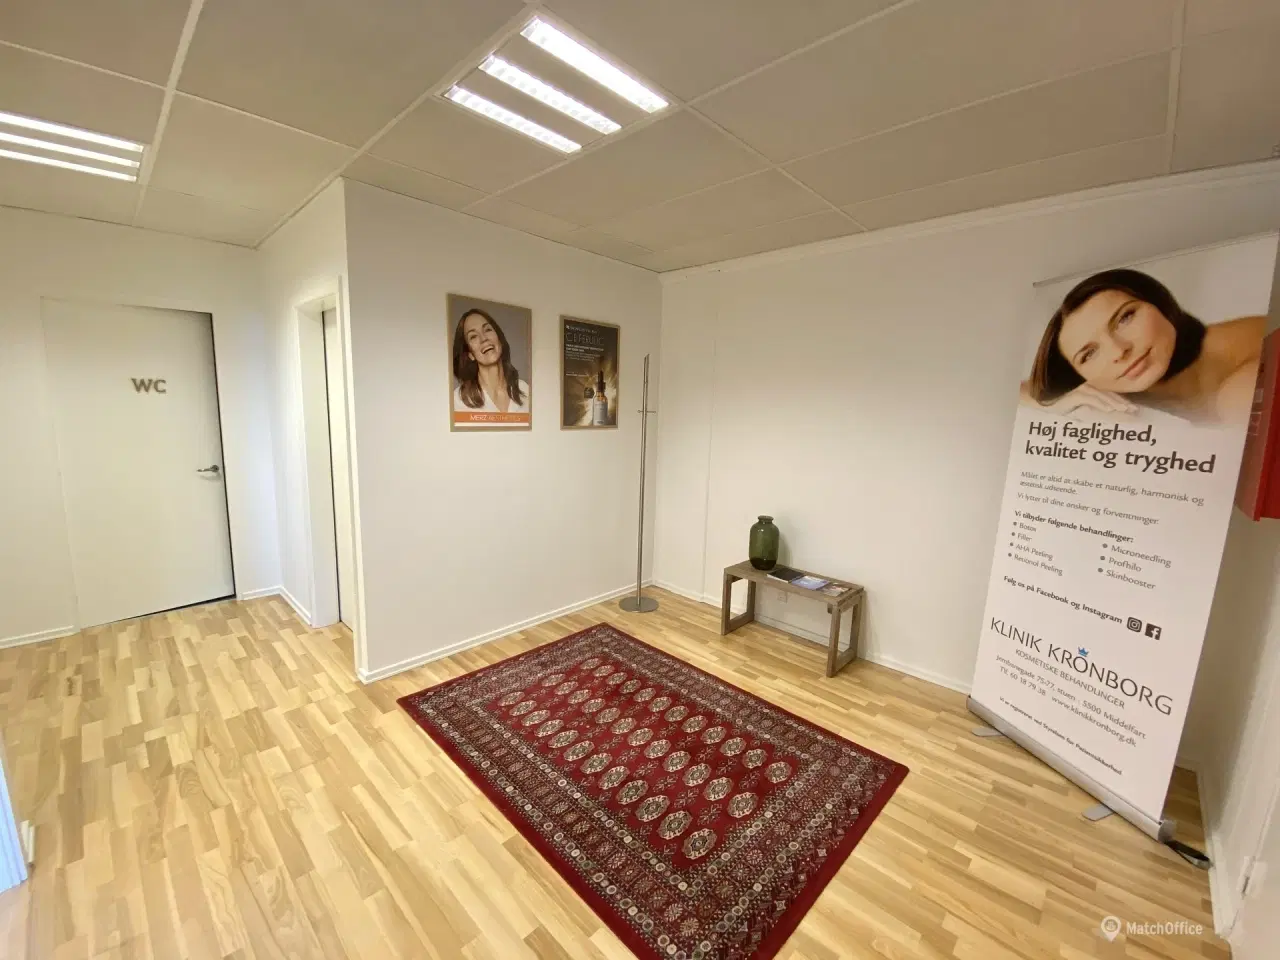 Billede 8 - 112 m² kontor/klinik lokale i velplaceret ejendom i Middelfart